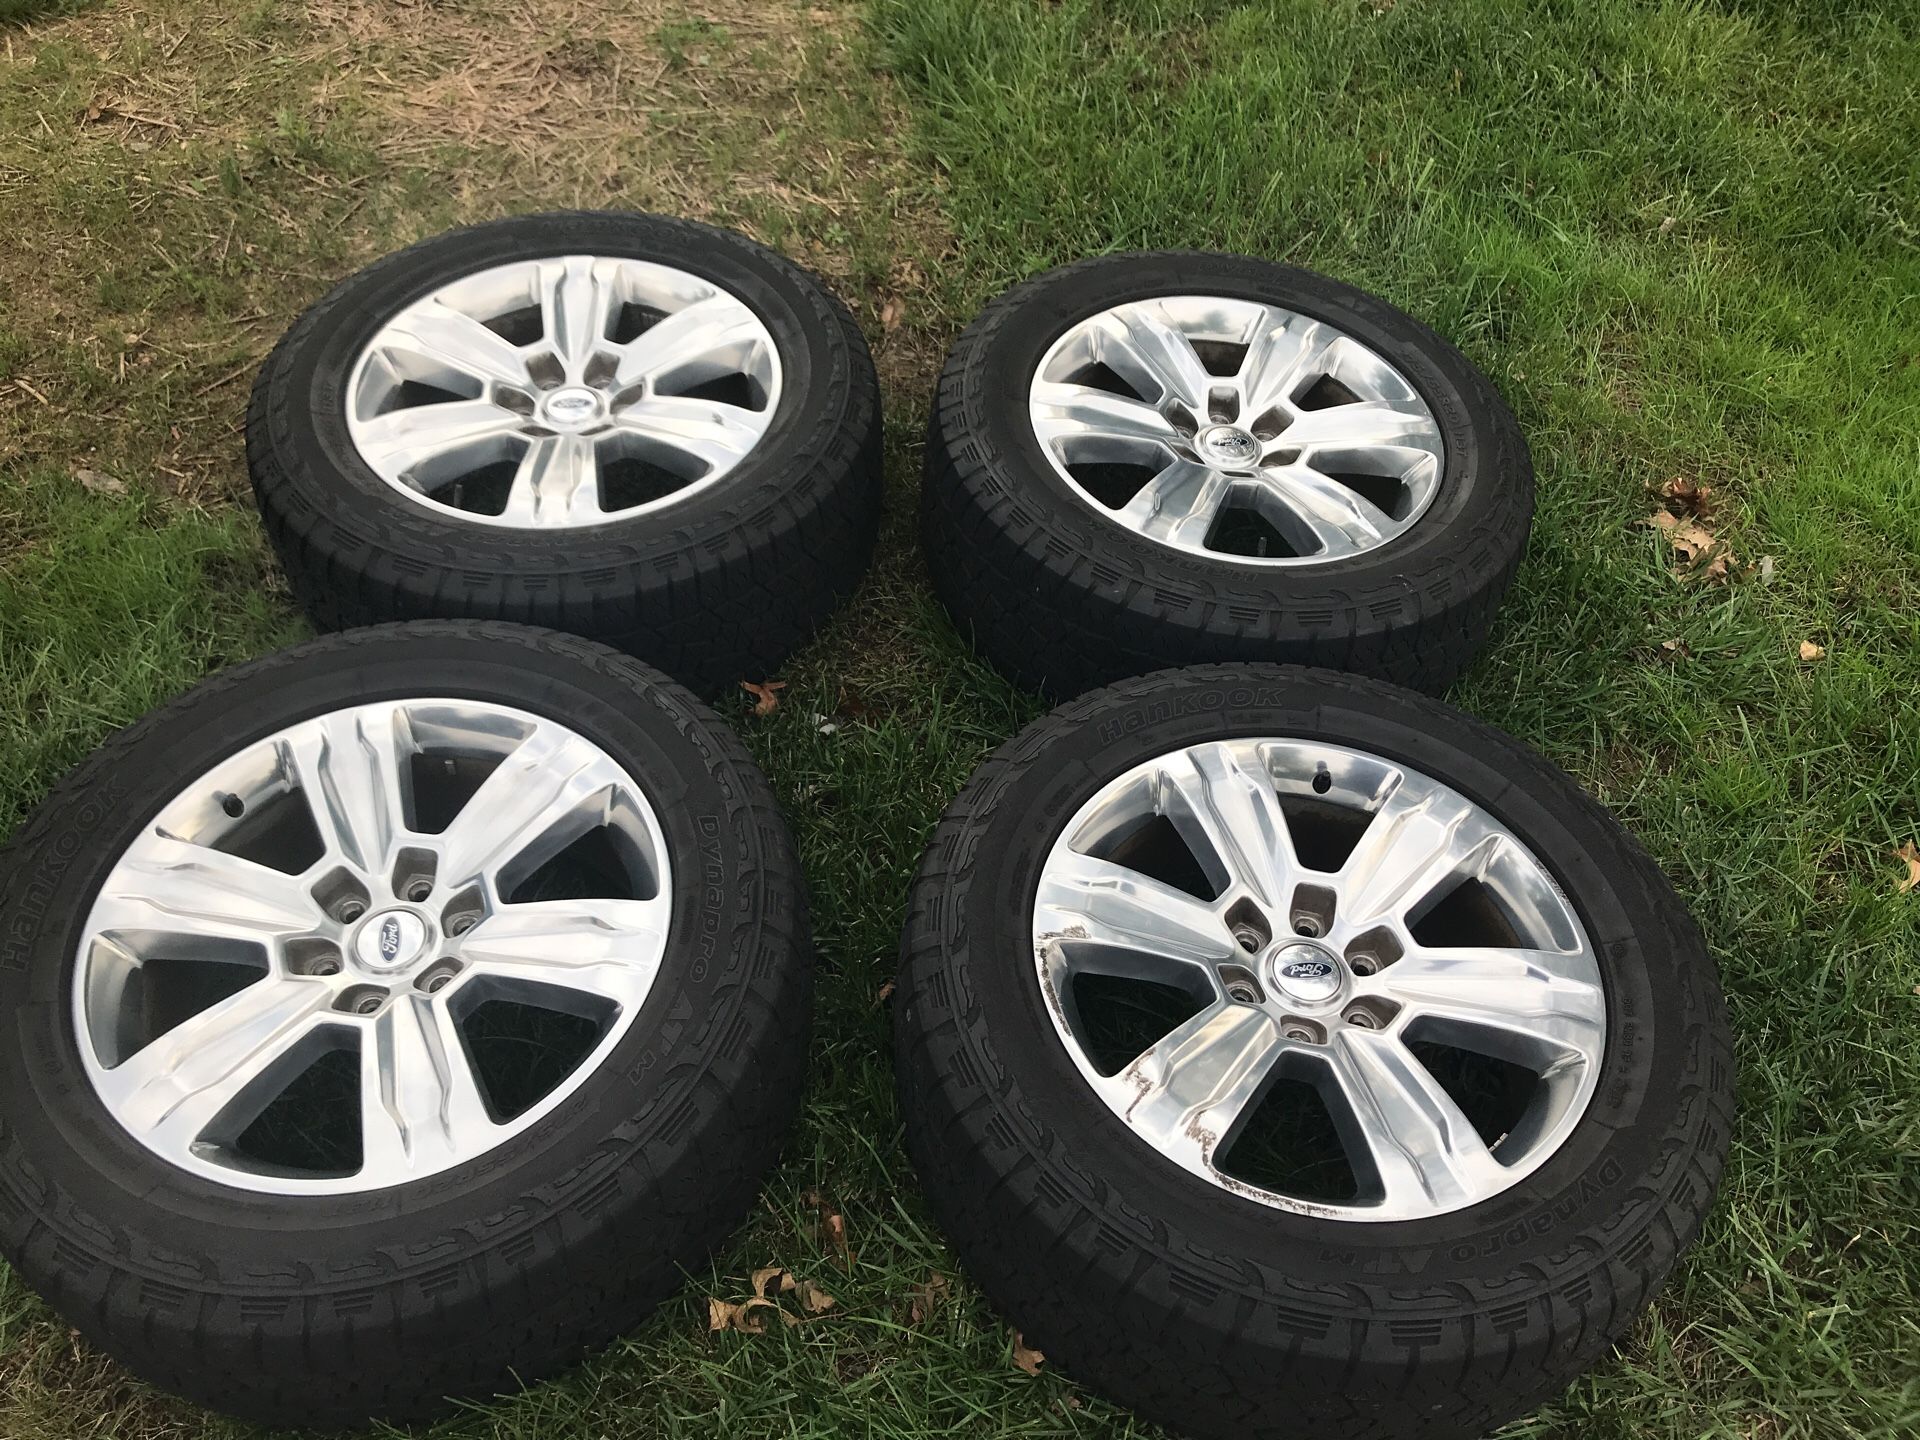 Set of 4 F150 Platinum Rims on Hankook Tires